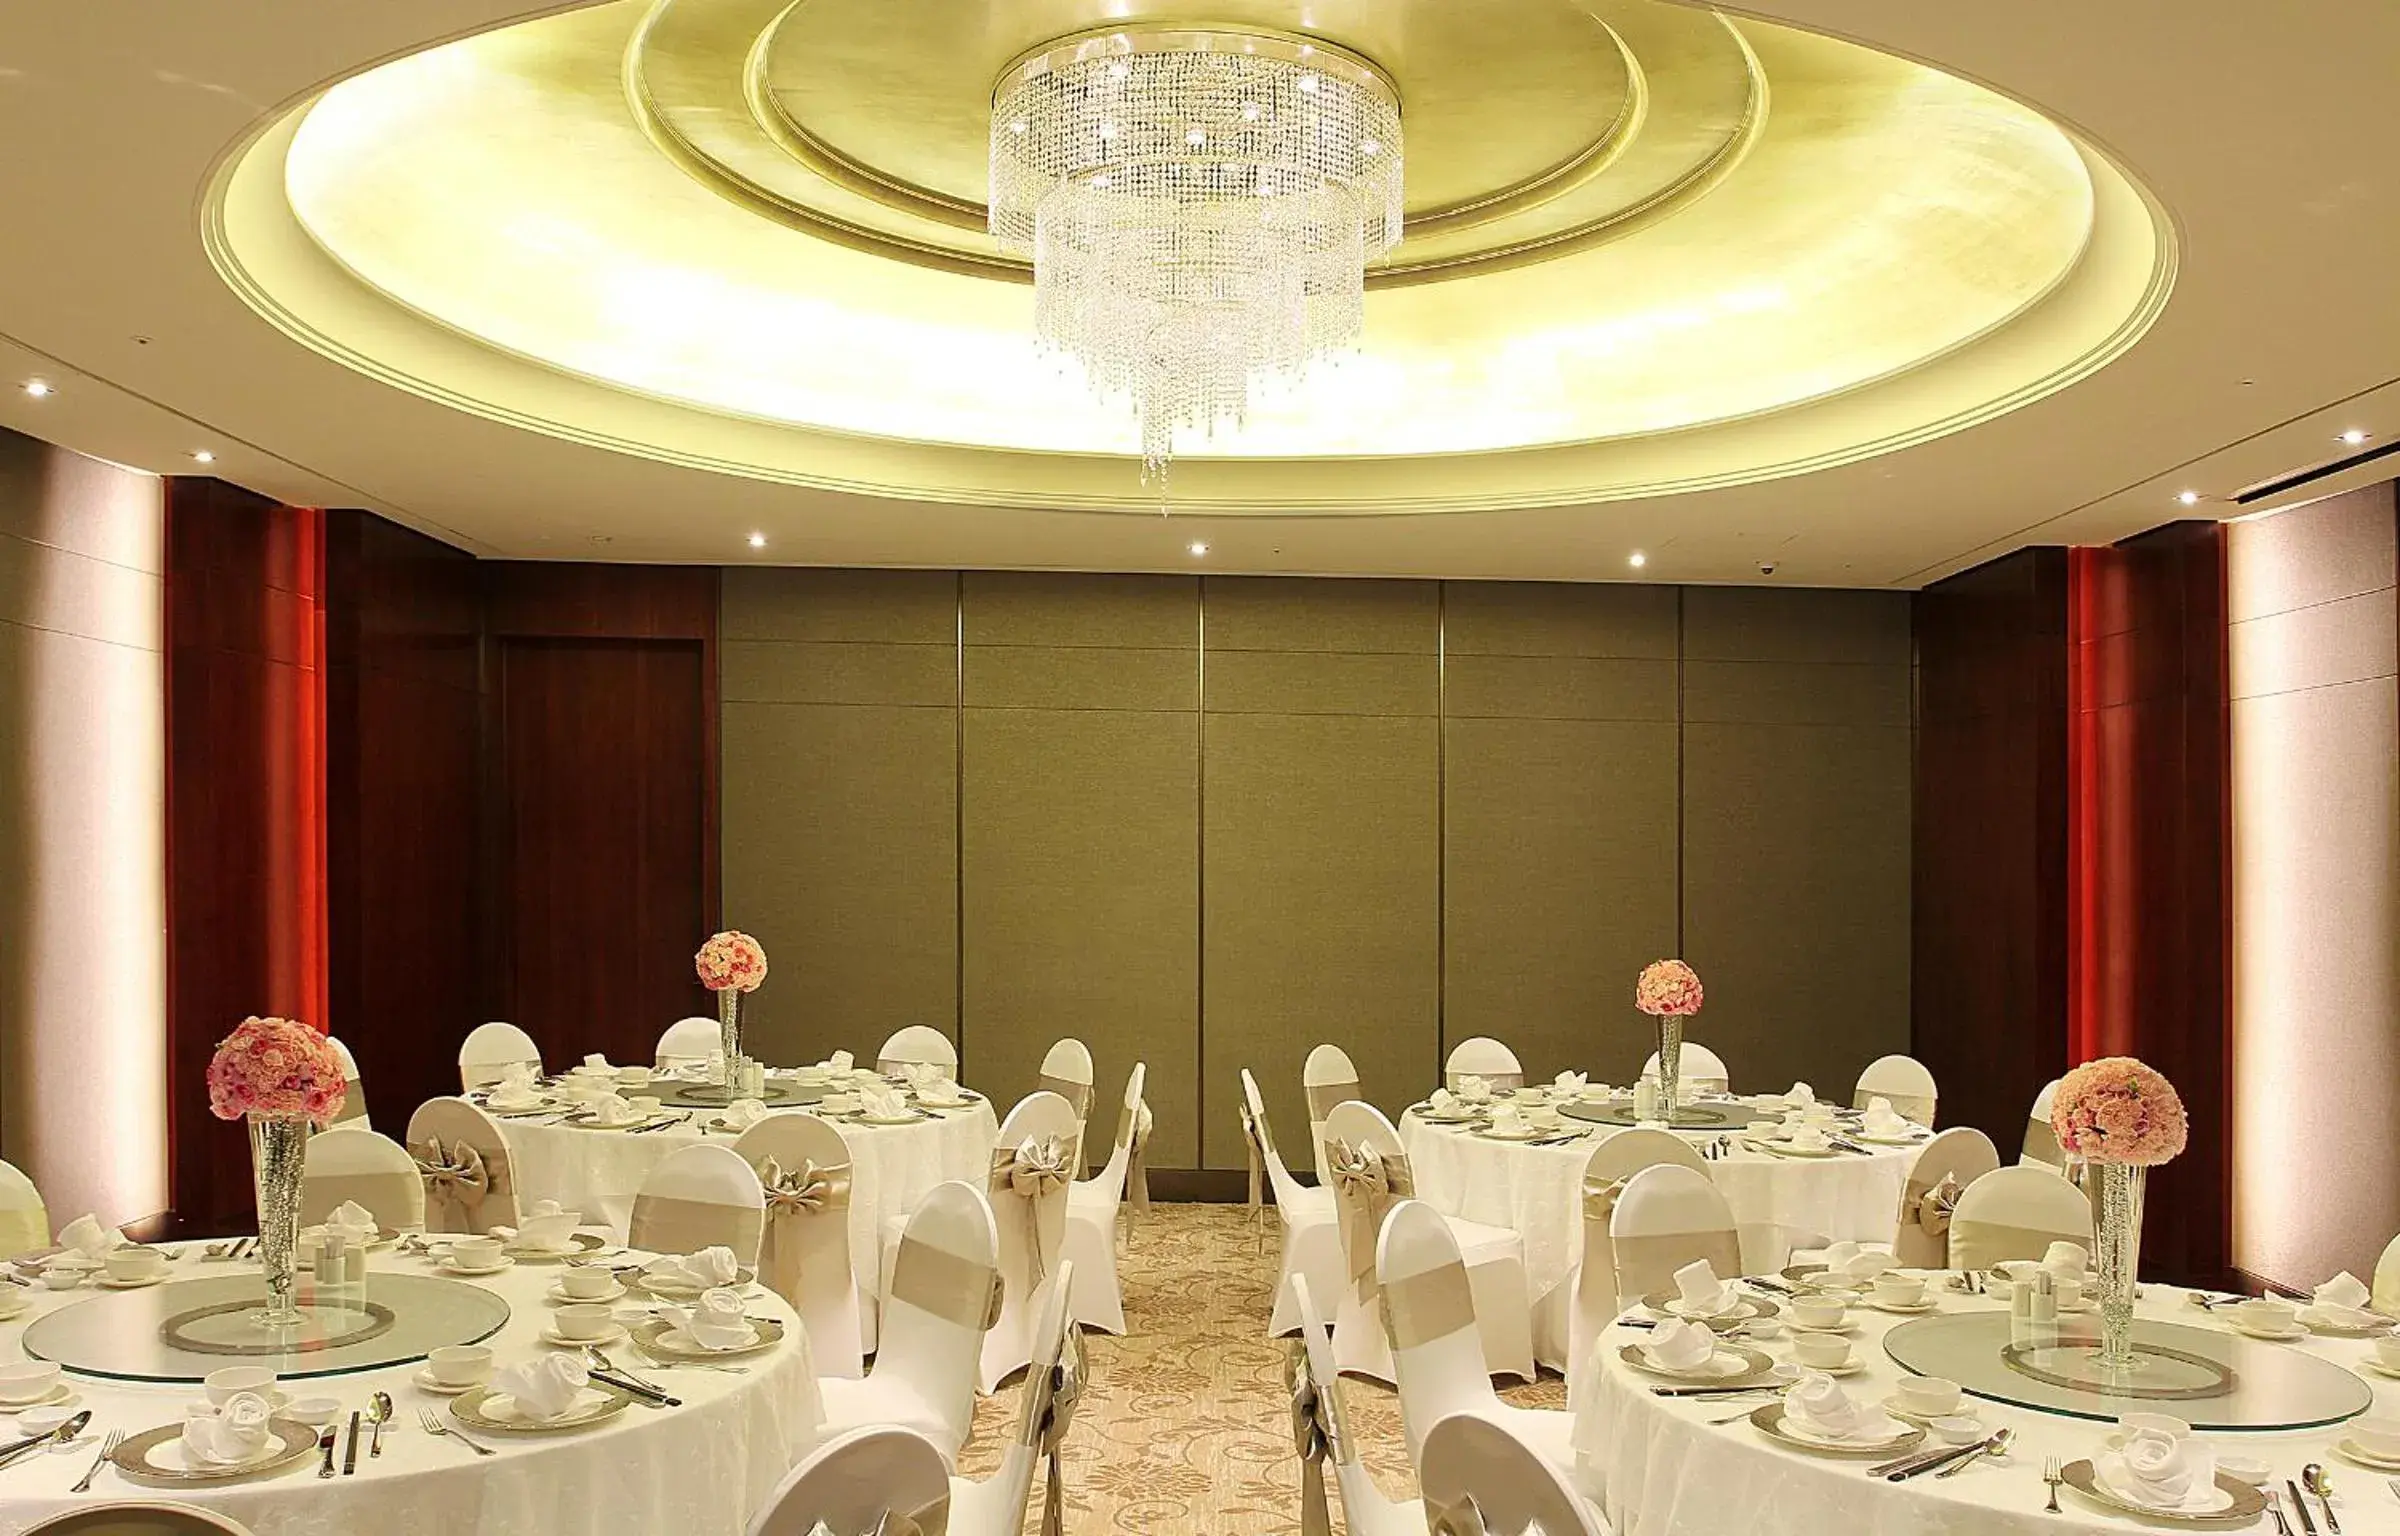 Banquet/Function facilities, Banquet Facilities in Lotte Hotel Saigon